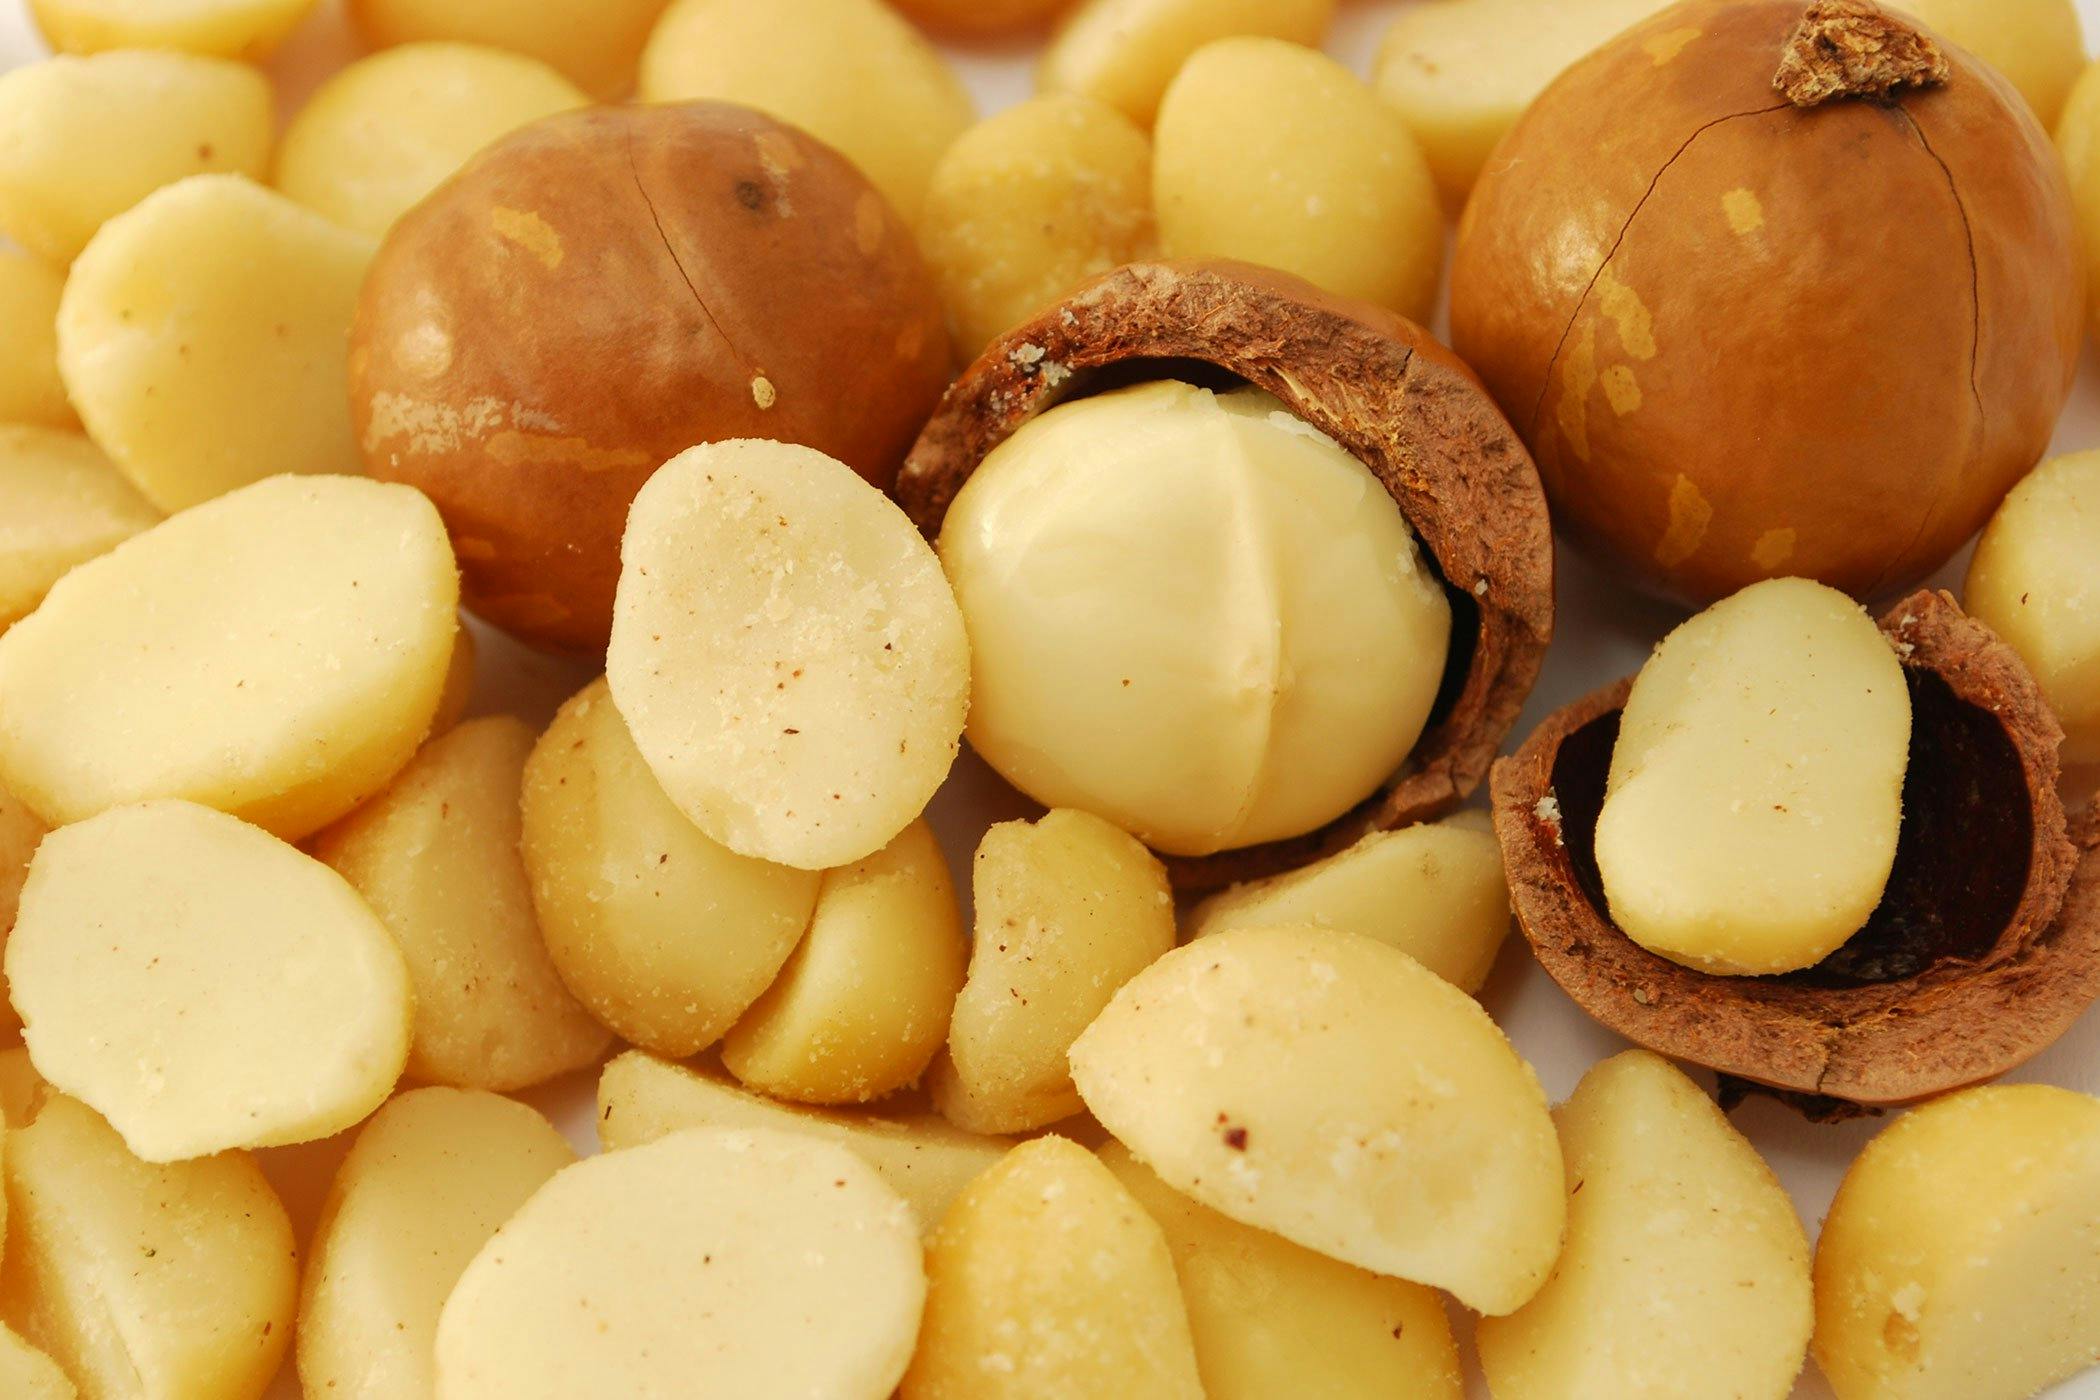 Résultat de recherche d'images pour "macadamia nut dog"